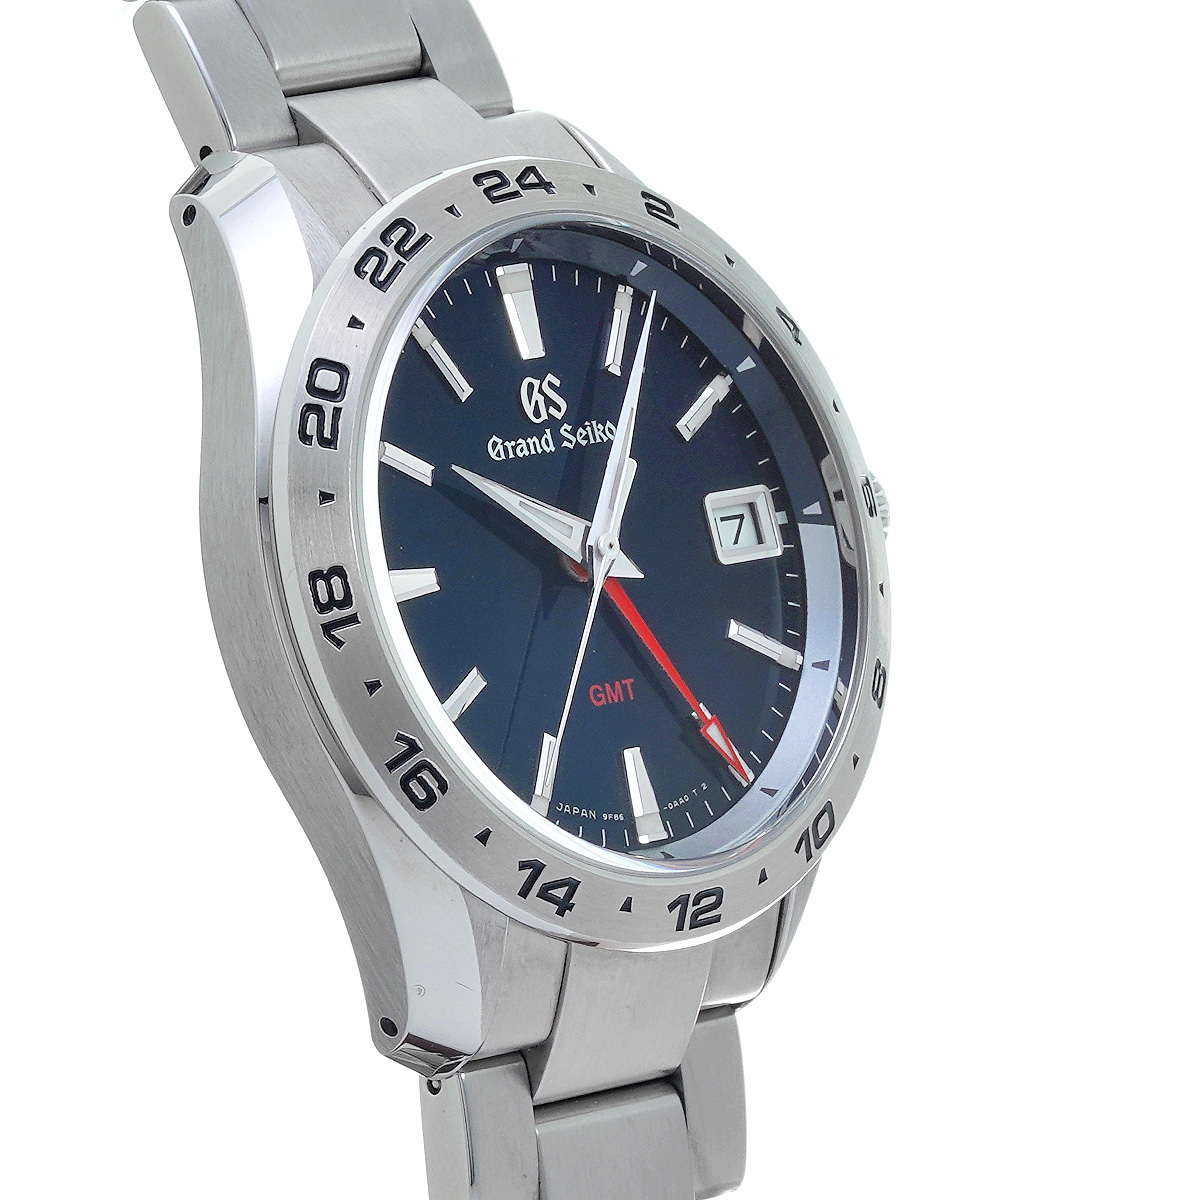 Grand Seiko グランドセイコー スポーツコレクション SBGN005 ブルー SS 腕時計 メンズ